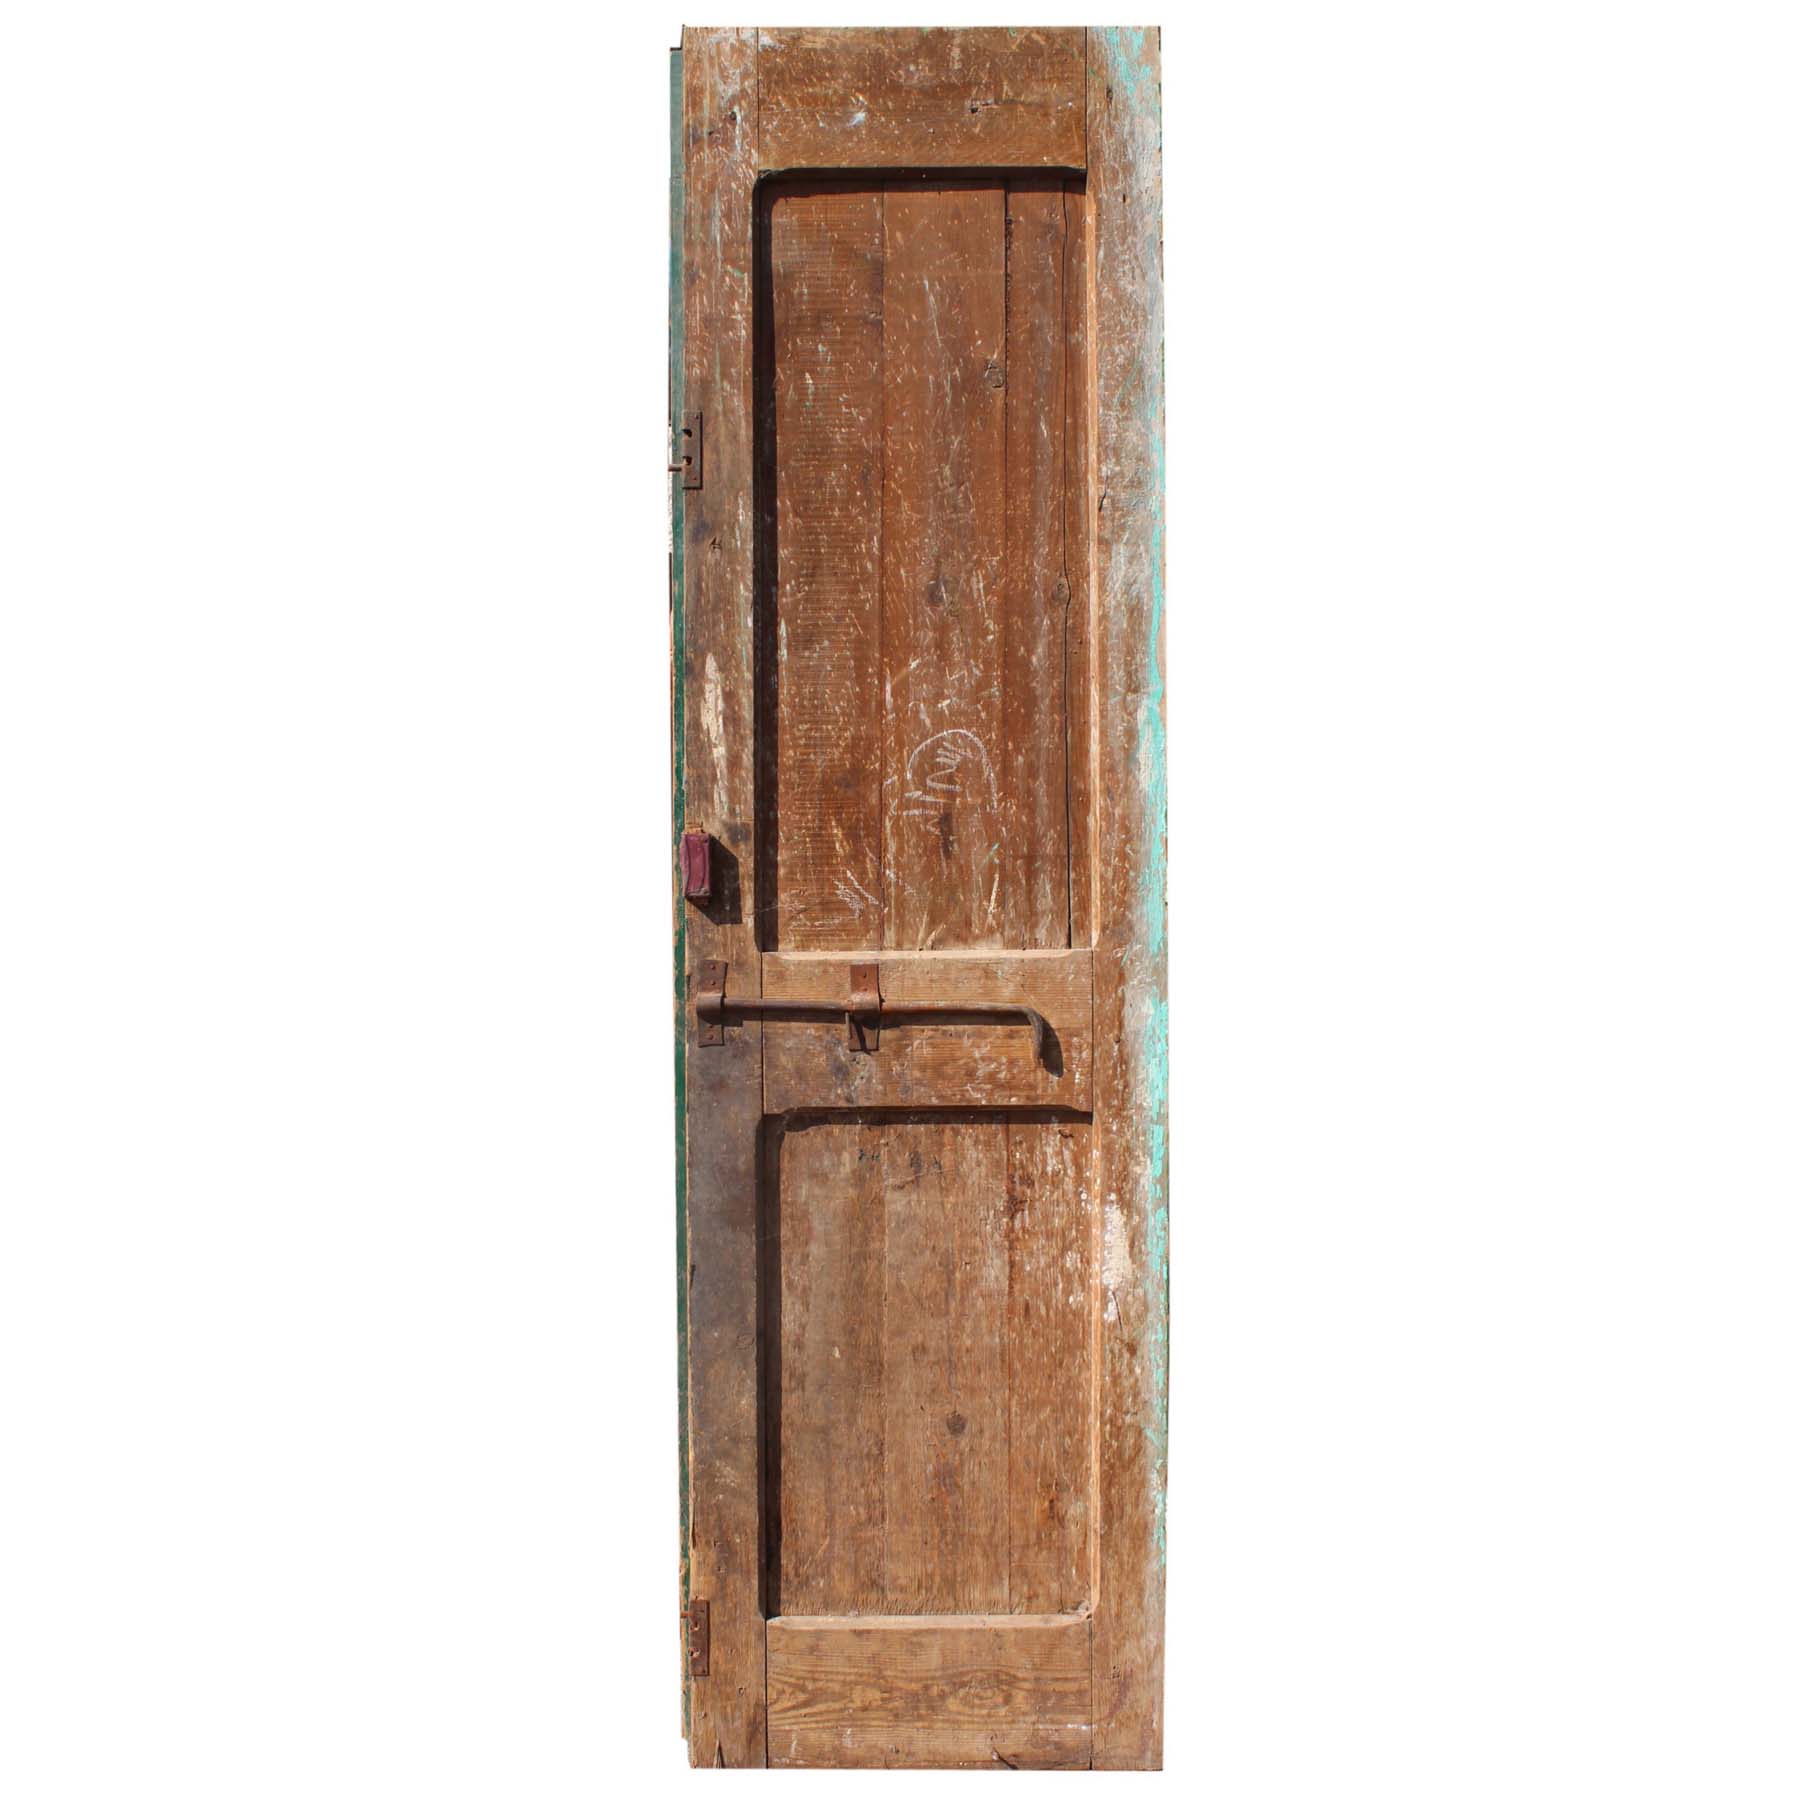 Antique 26” Door with Carved Details-69211